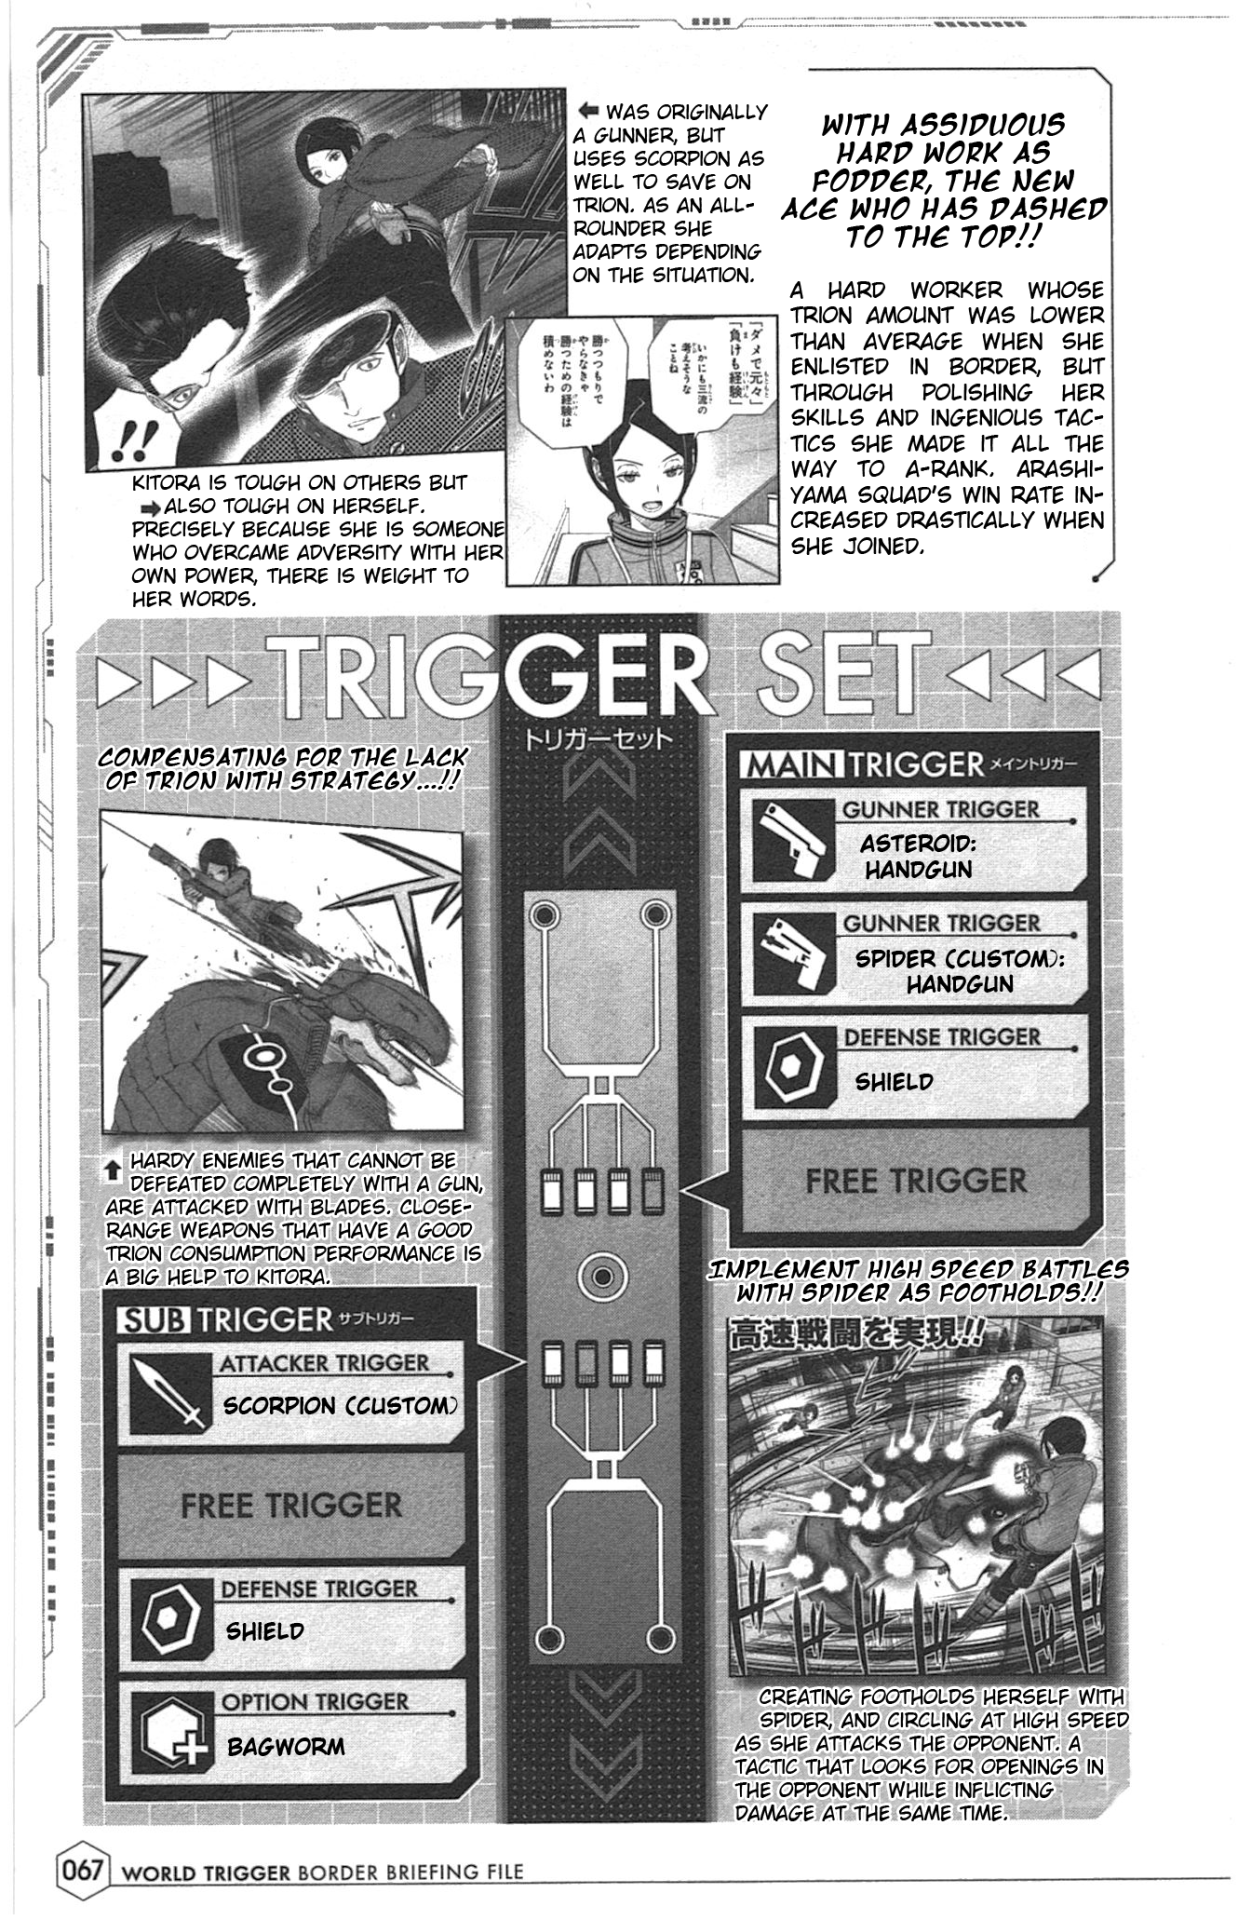 ちっぽけな僕ら — World Trigger BBF Translation - Part 3 of Many